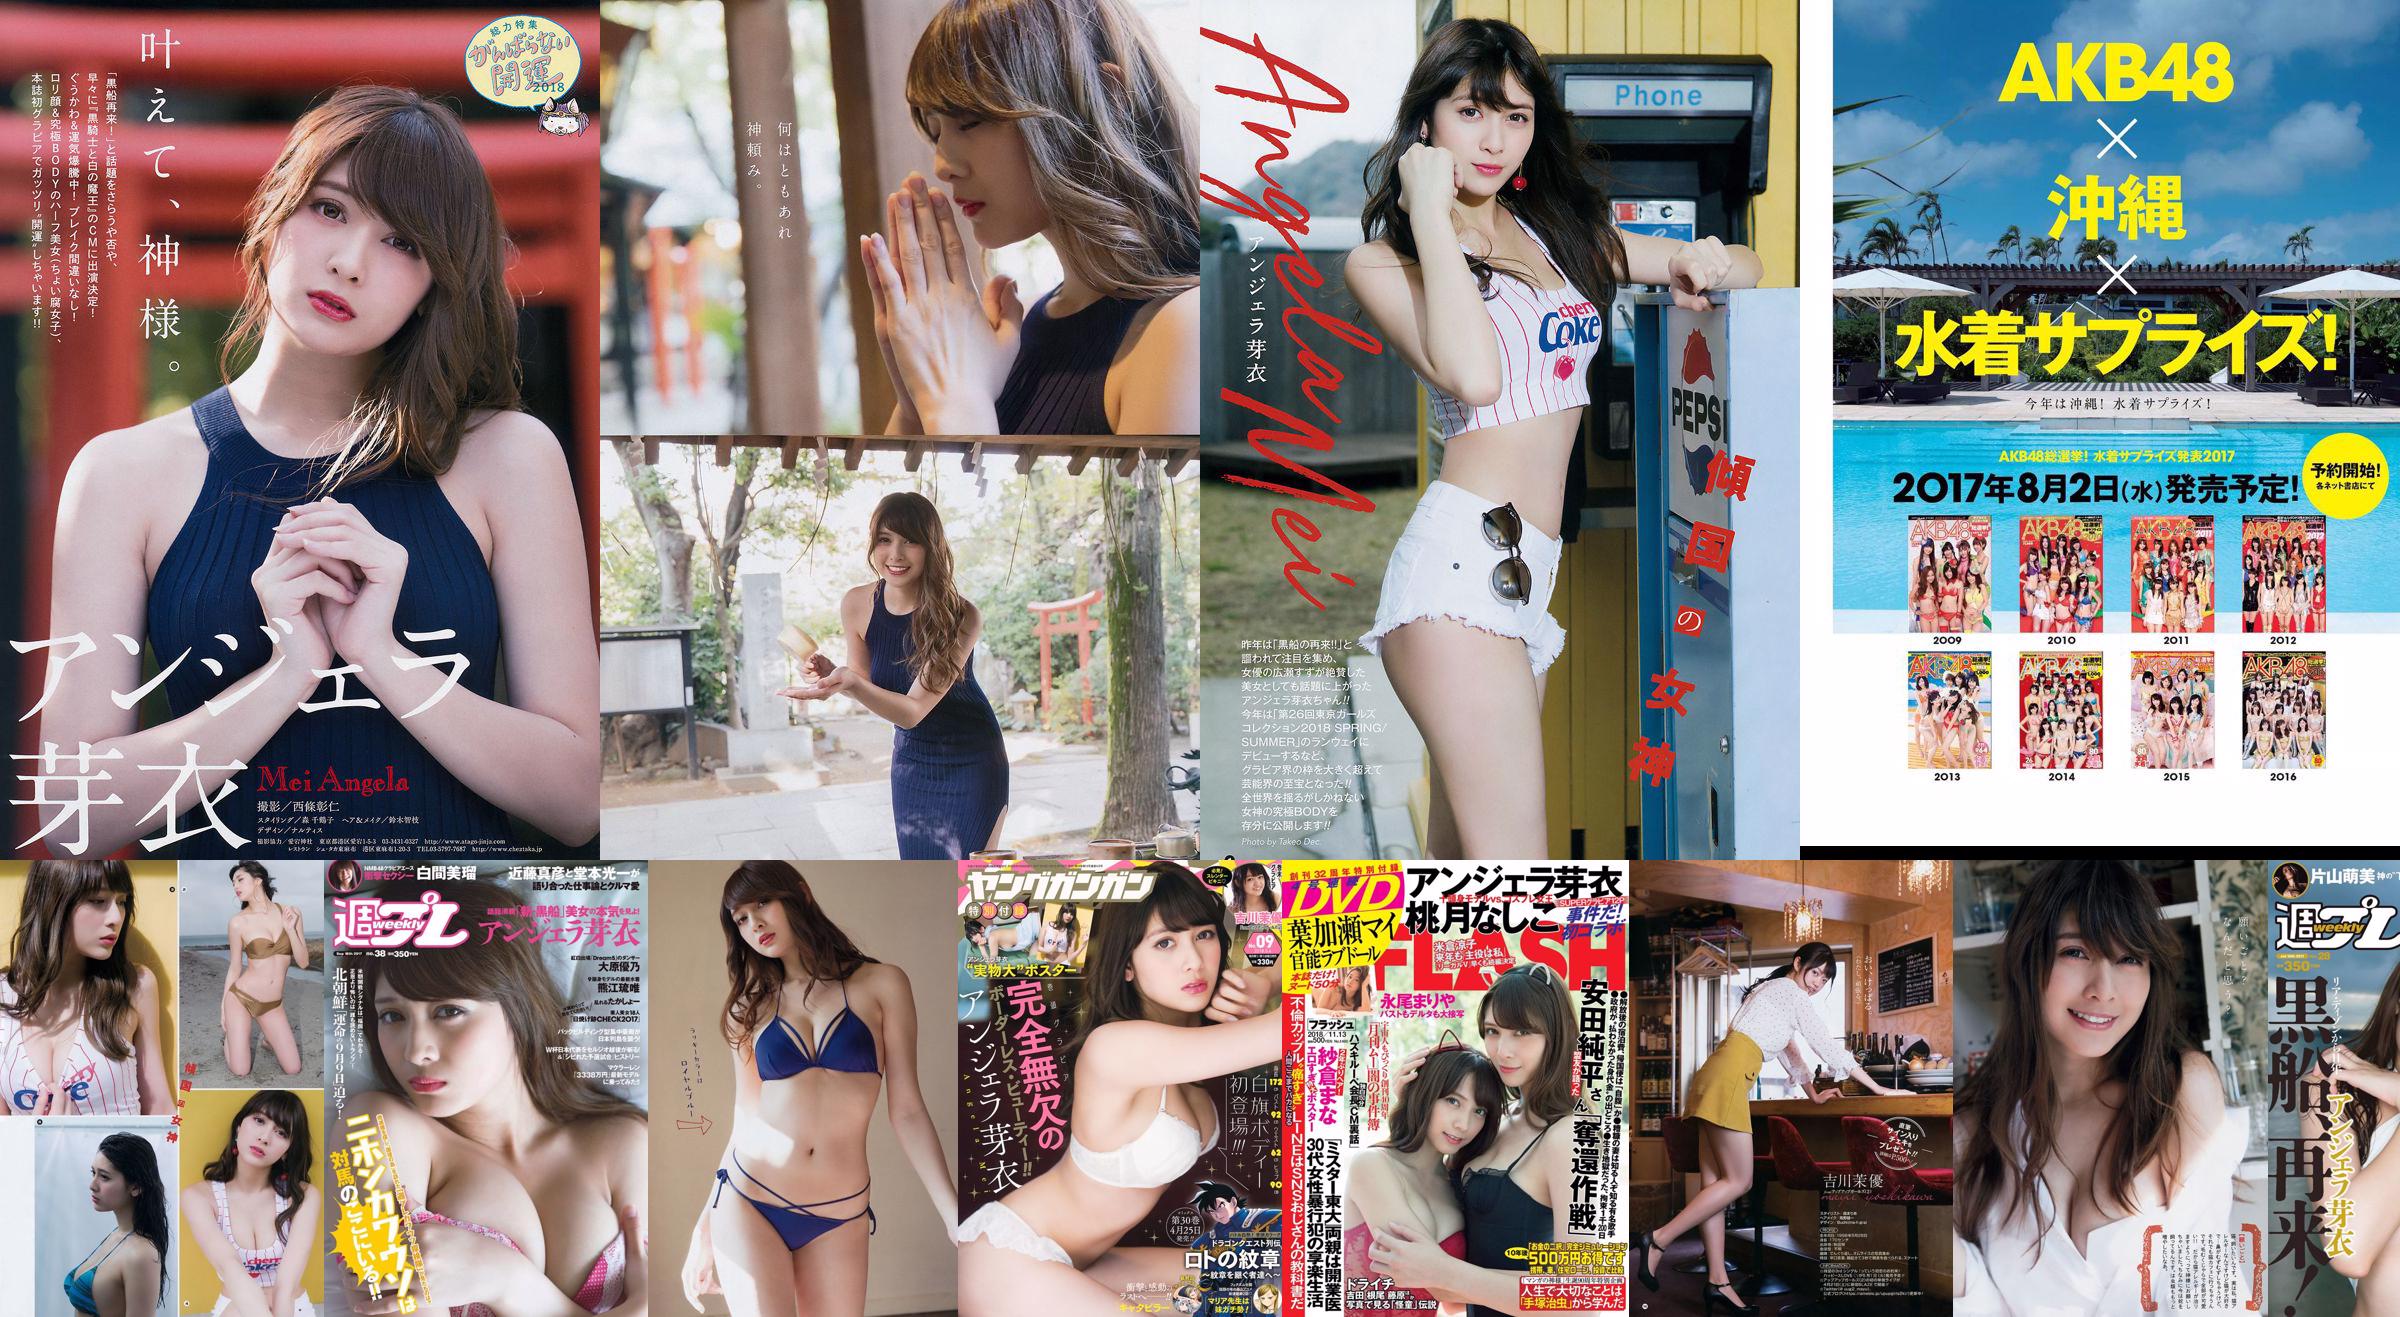 Angela Mei Miru Shiroma Rui Kumae Haruka Yamashita Yuno Ohara [Weekly Playboy] 2017 No.38 Photograph No.a8a2a6 Page 1